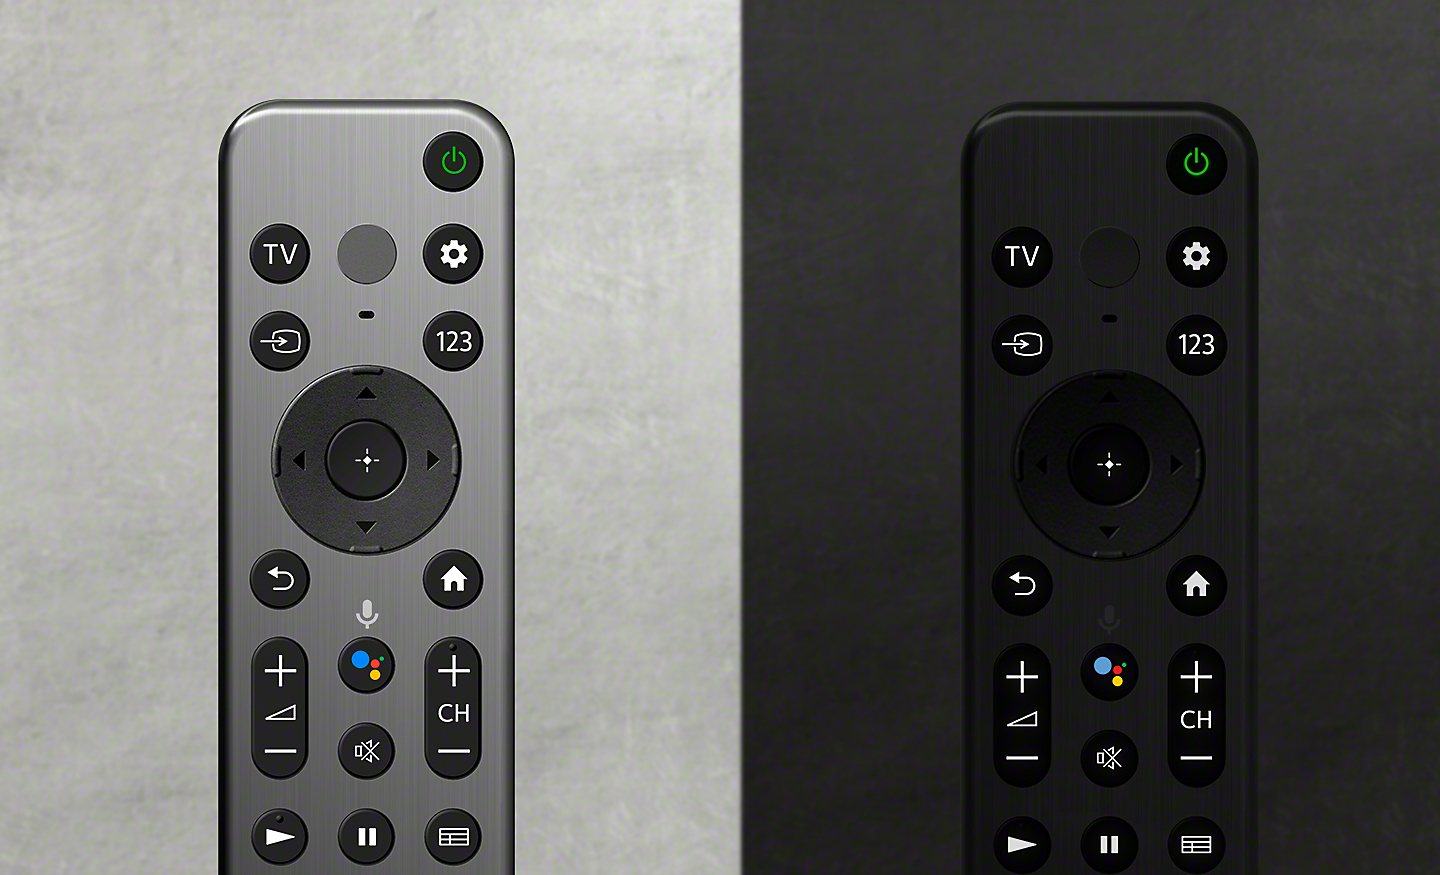 Afbeeldingen van twee afstandsbedieningen: rechts een zilverkleurige en links een zwarte